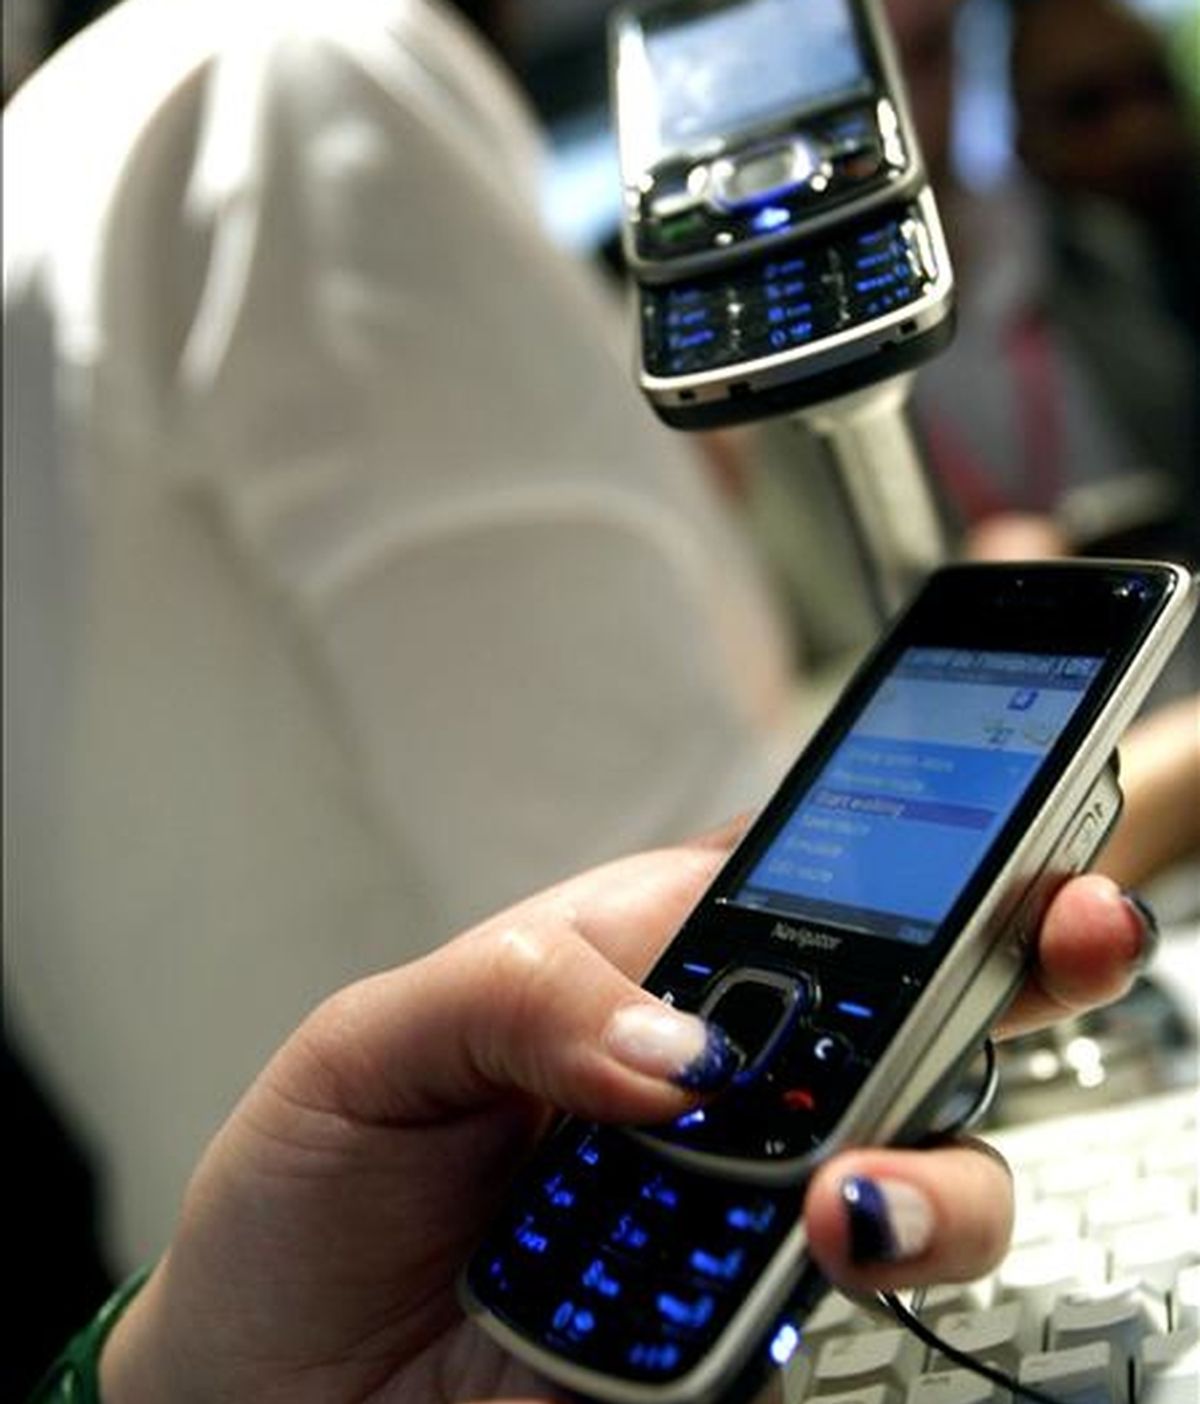 Un teléfono de la marca Nokia. EFE/Archivo